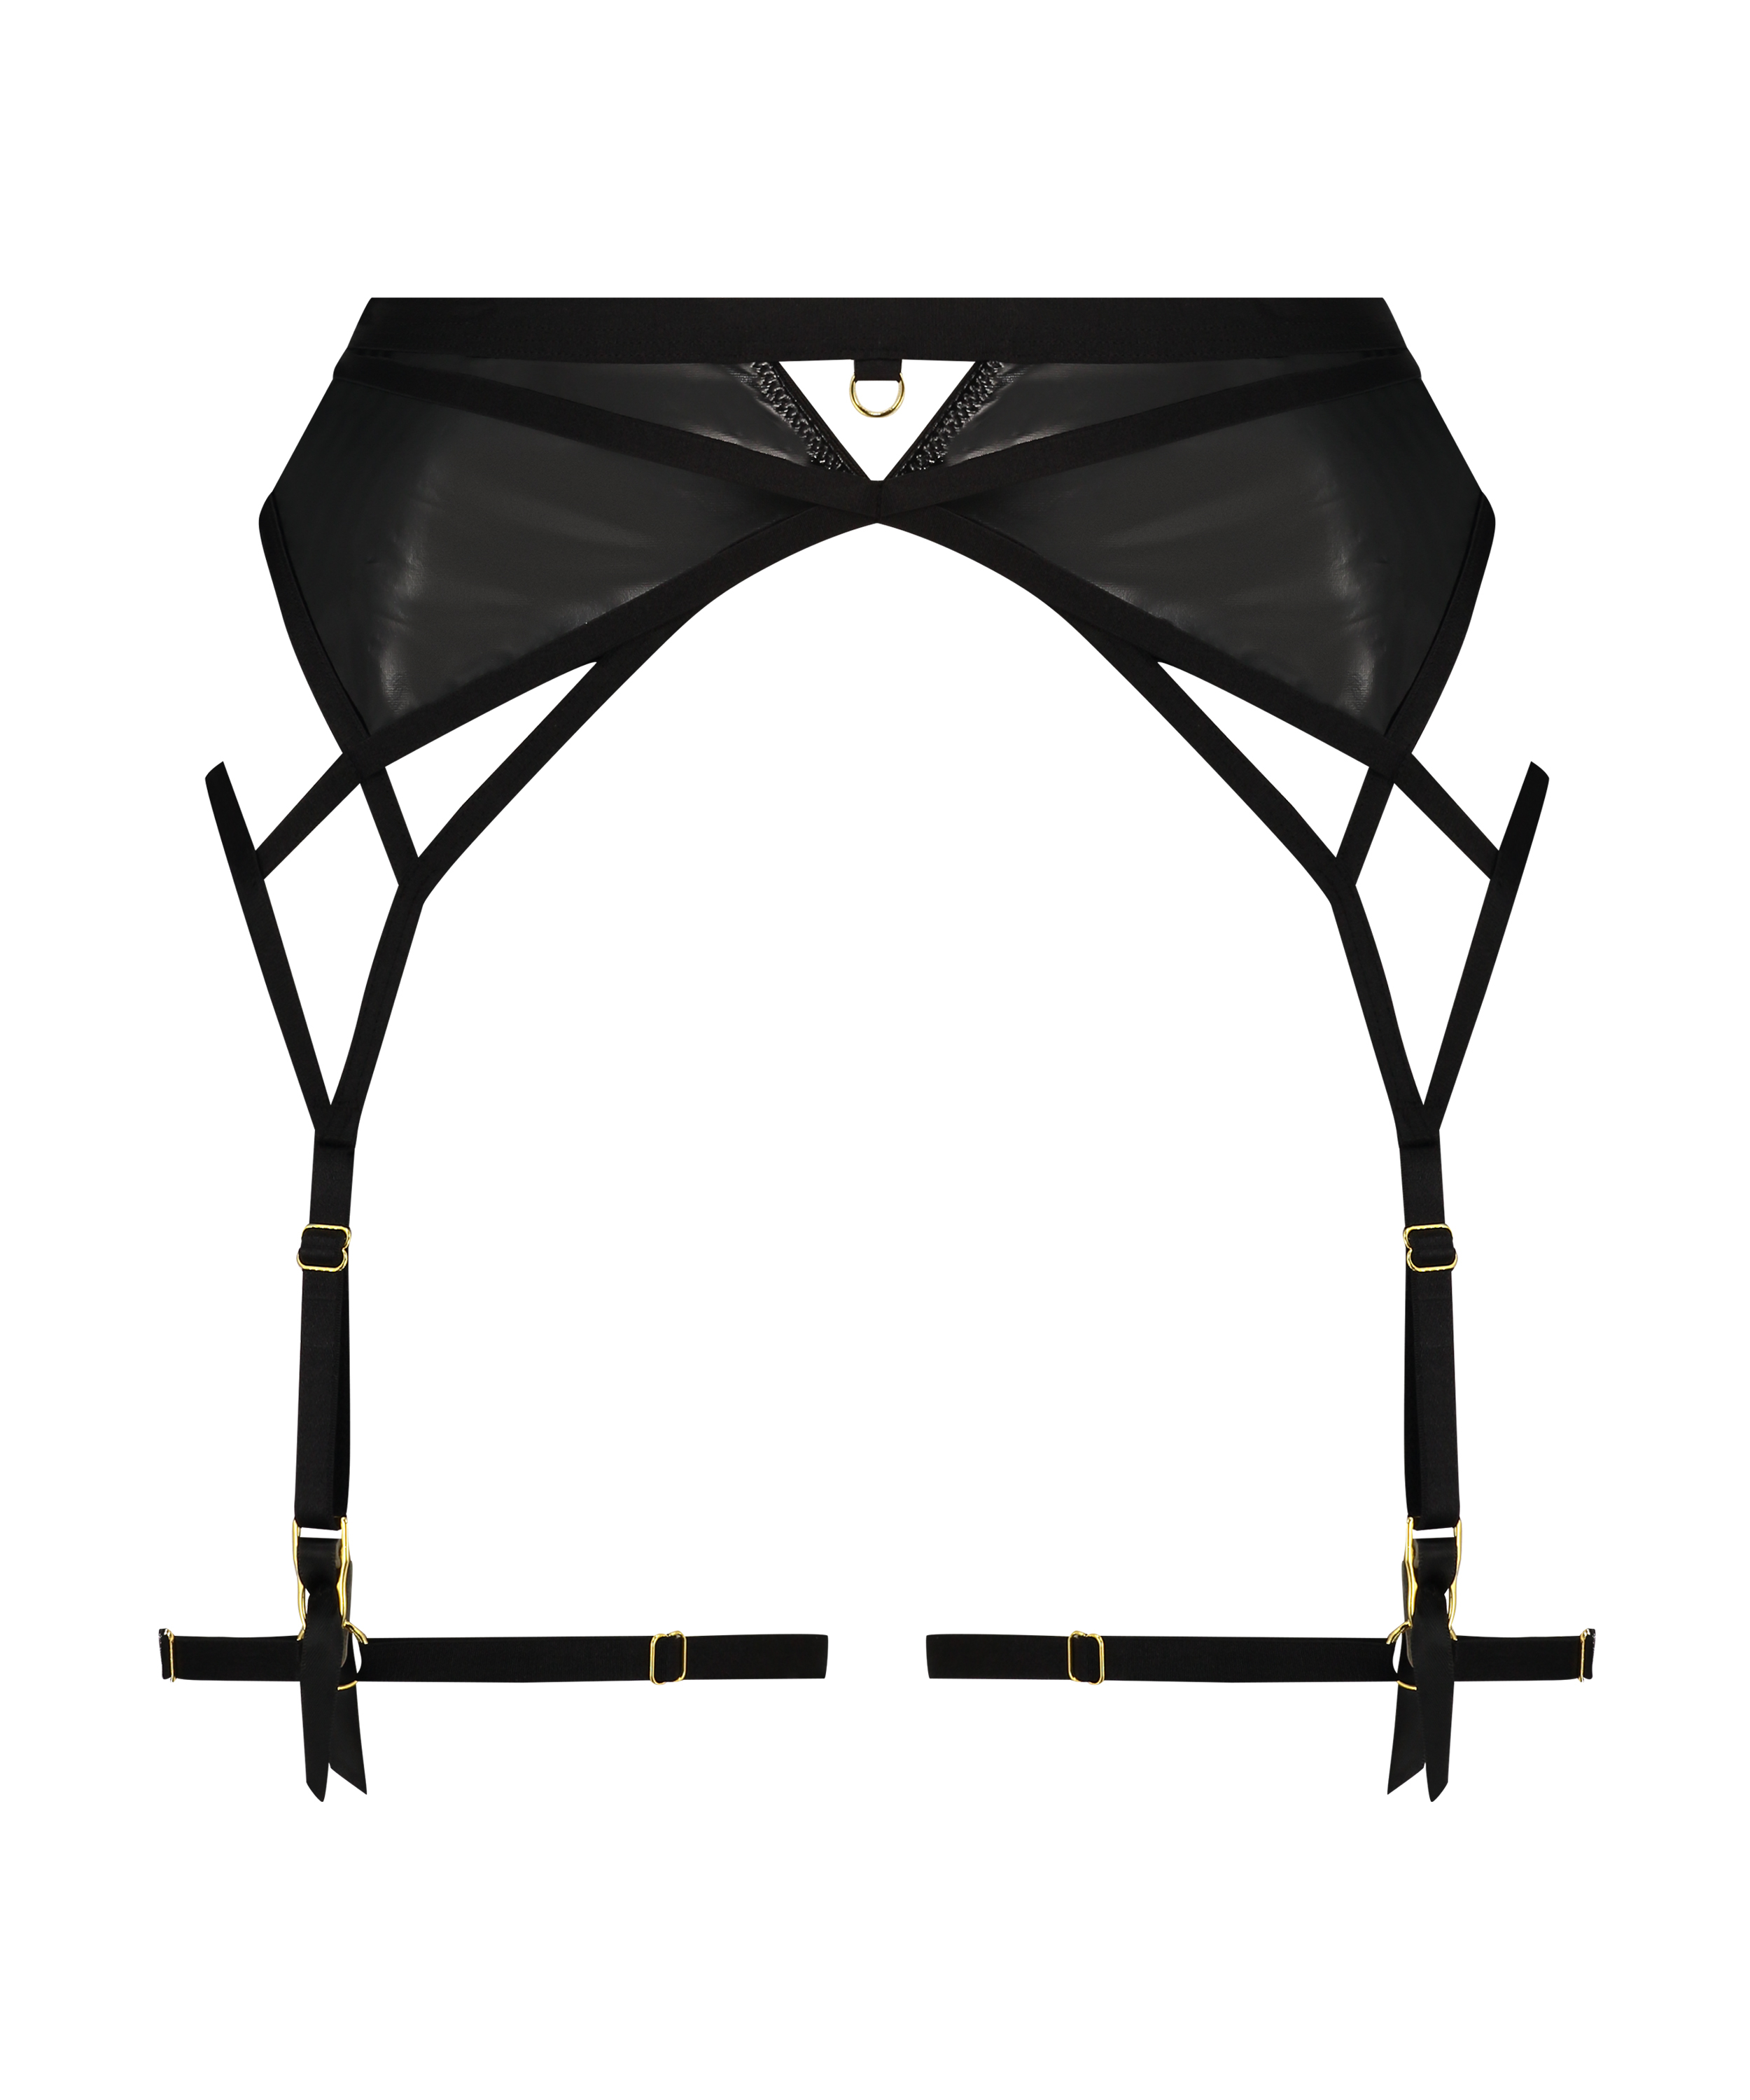 Seductress Suspenders, Black, main